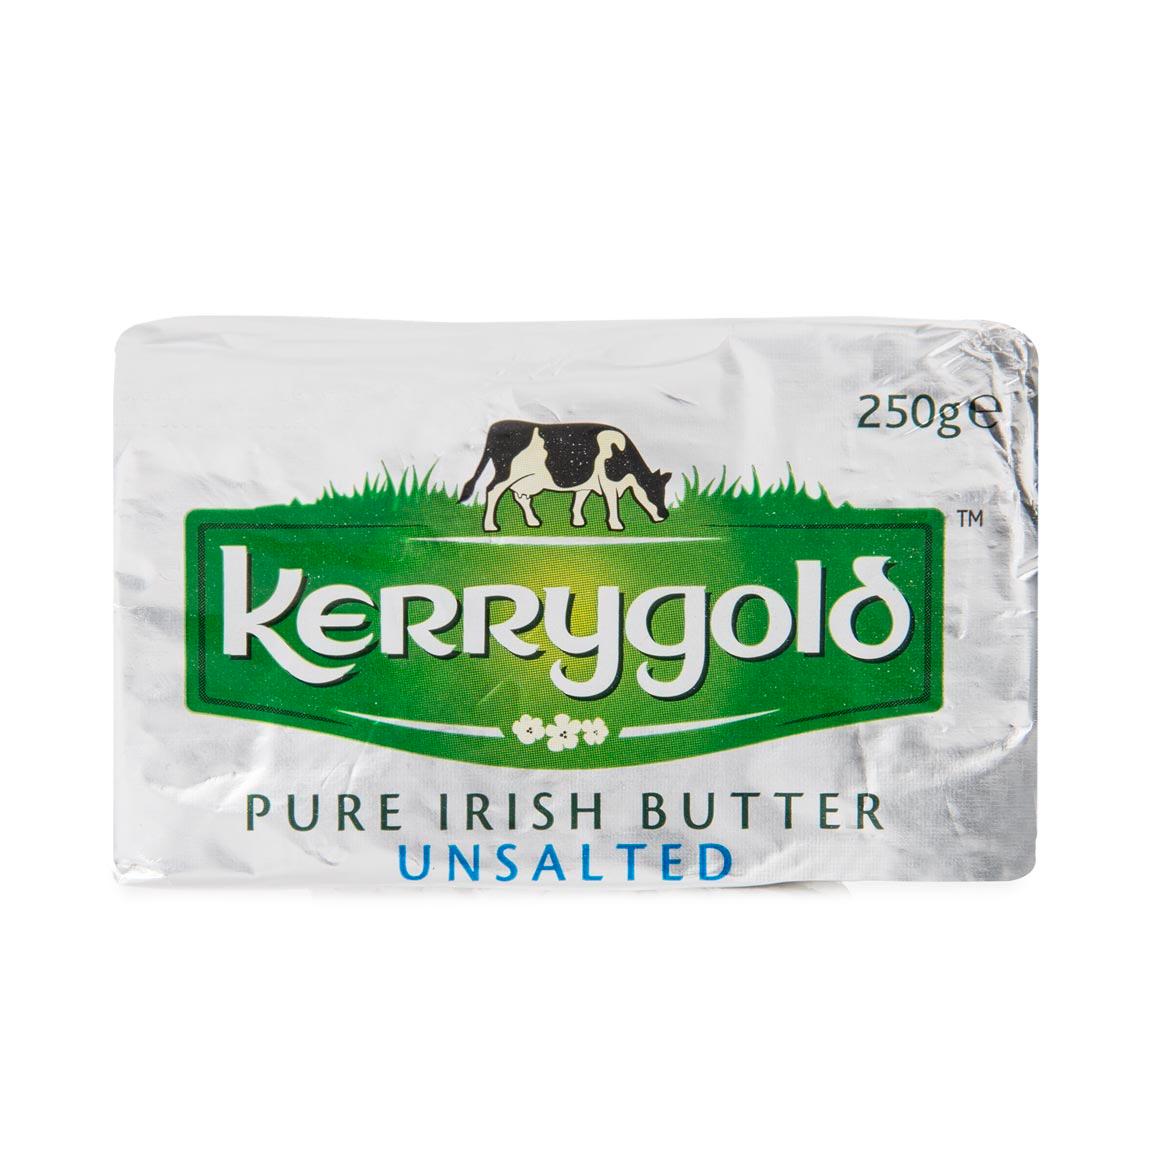 Butter Irish Foil Unsalted